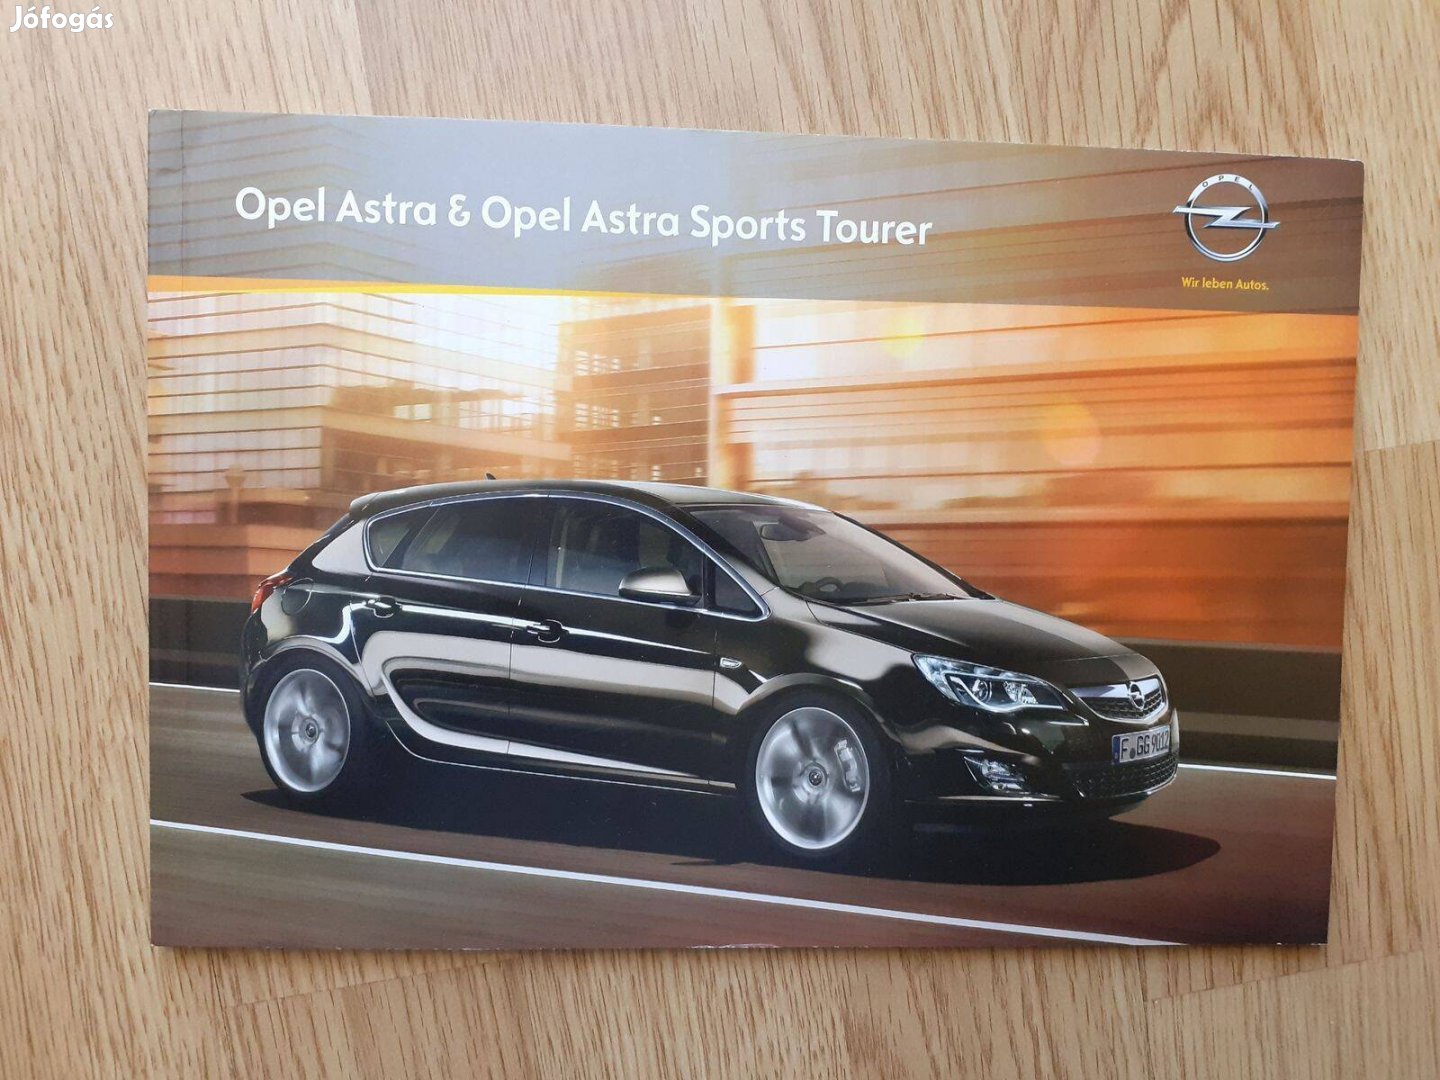 Opel Astra & Sports Tourer prospektus - 2012, magyar nyelvű